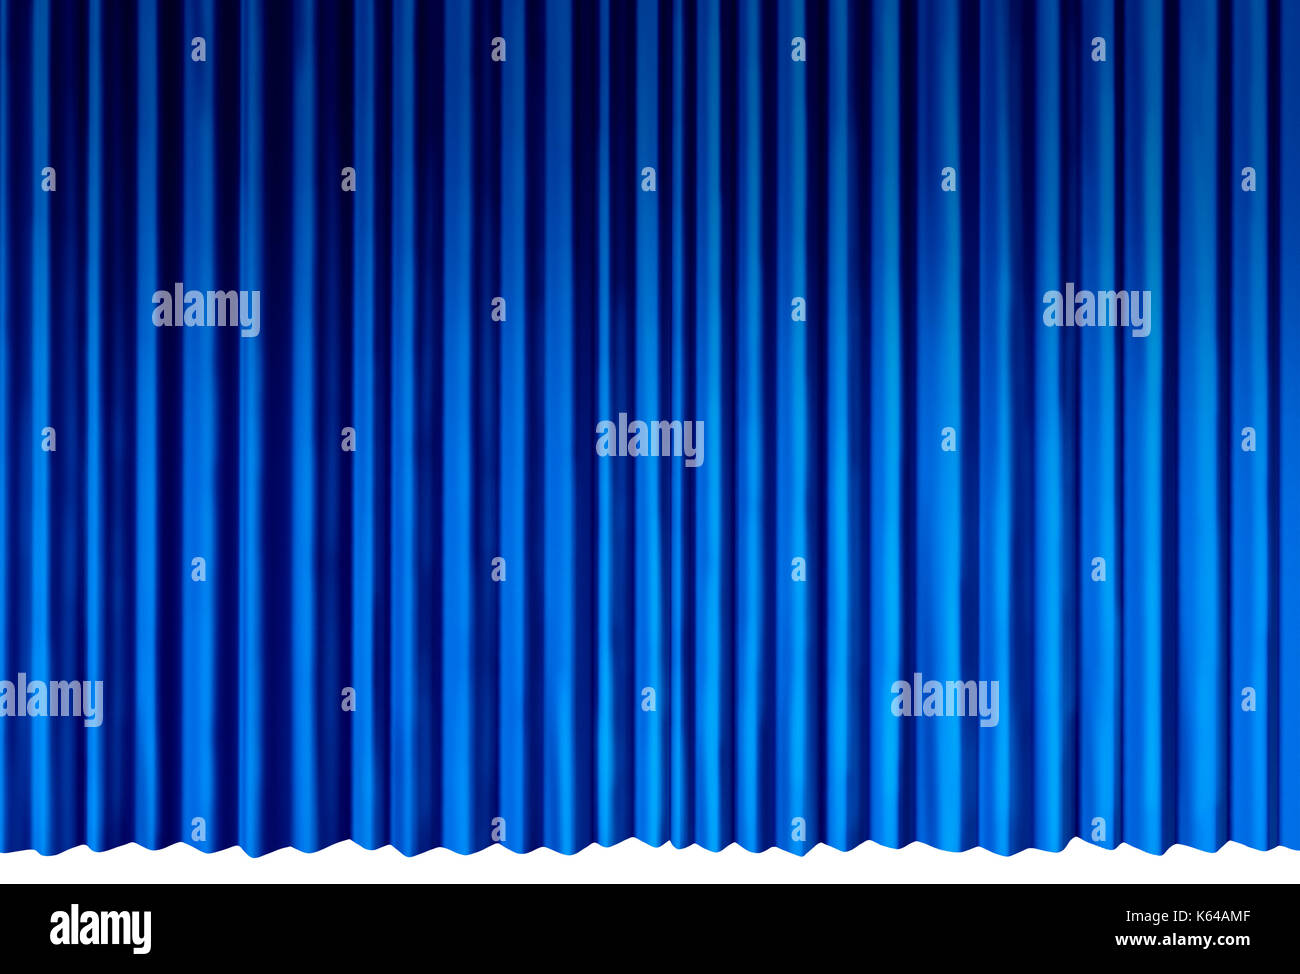 Rideaux bleu indigo comme objet cool rideaux de velours qui représente l'étape de divertissement théâtral isolé sur un fond blanc comme un 3d illustration. Banque D'Images